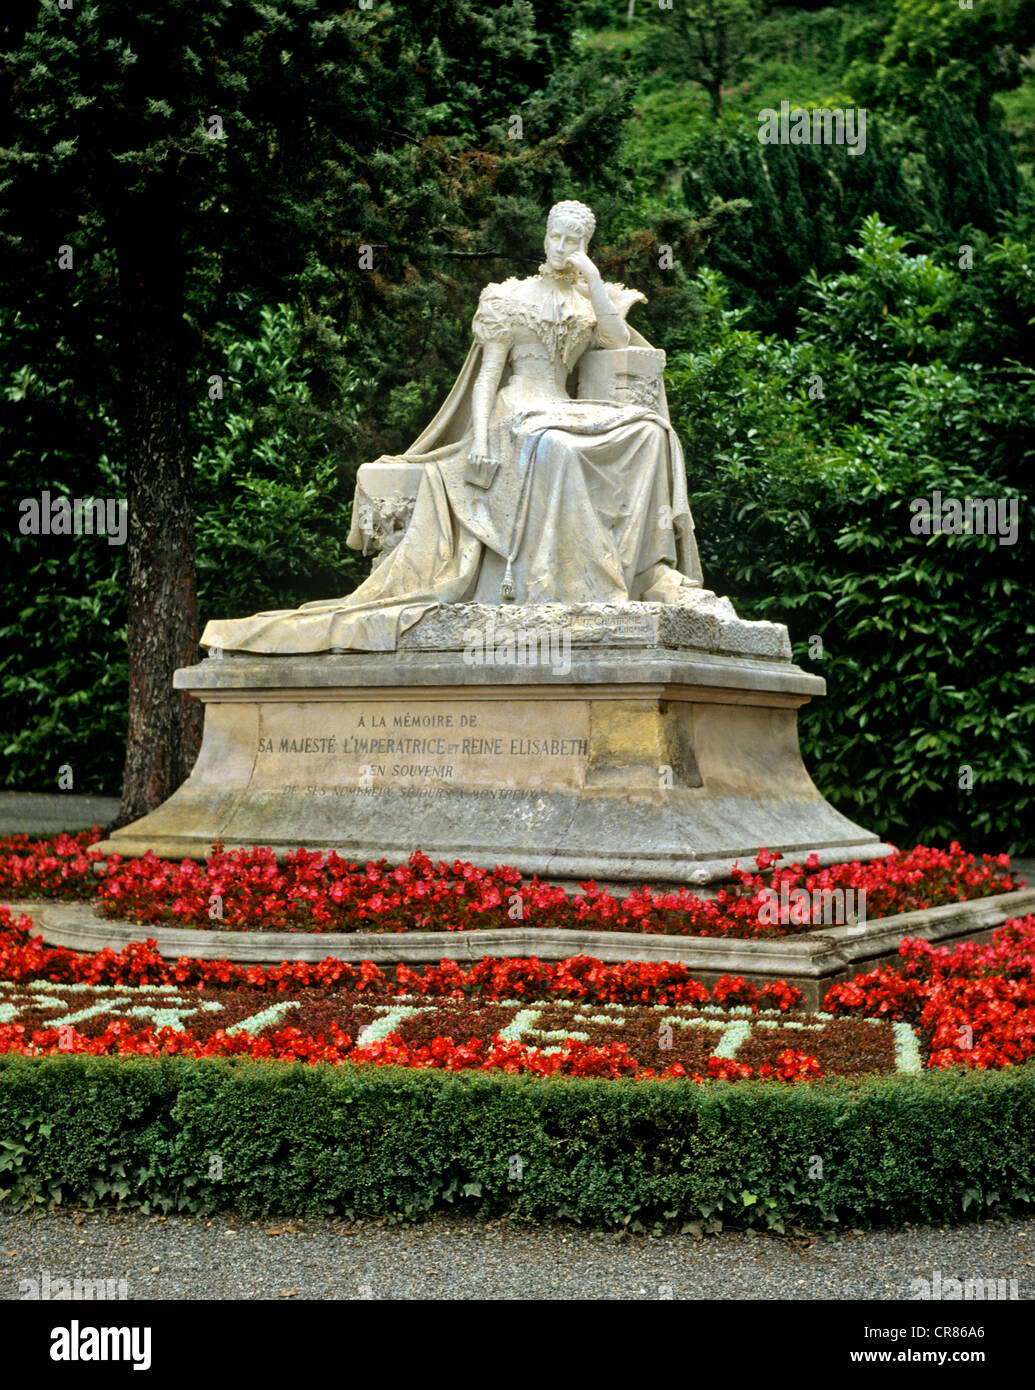 Denkmal der Kaiserin Elisabeth von Wittelsbach oder Österreich, auch  bekannt als "Sissi", Rosen Quadrat, Territet, Montreux, Schweiz  Stockfotografie - Alamy